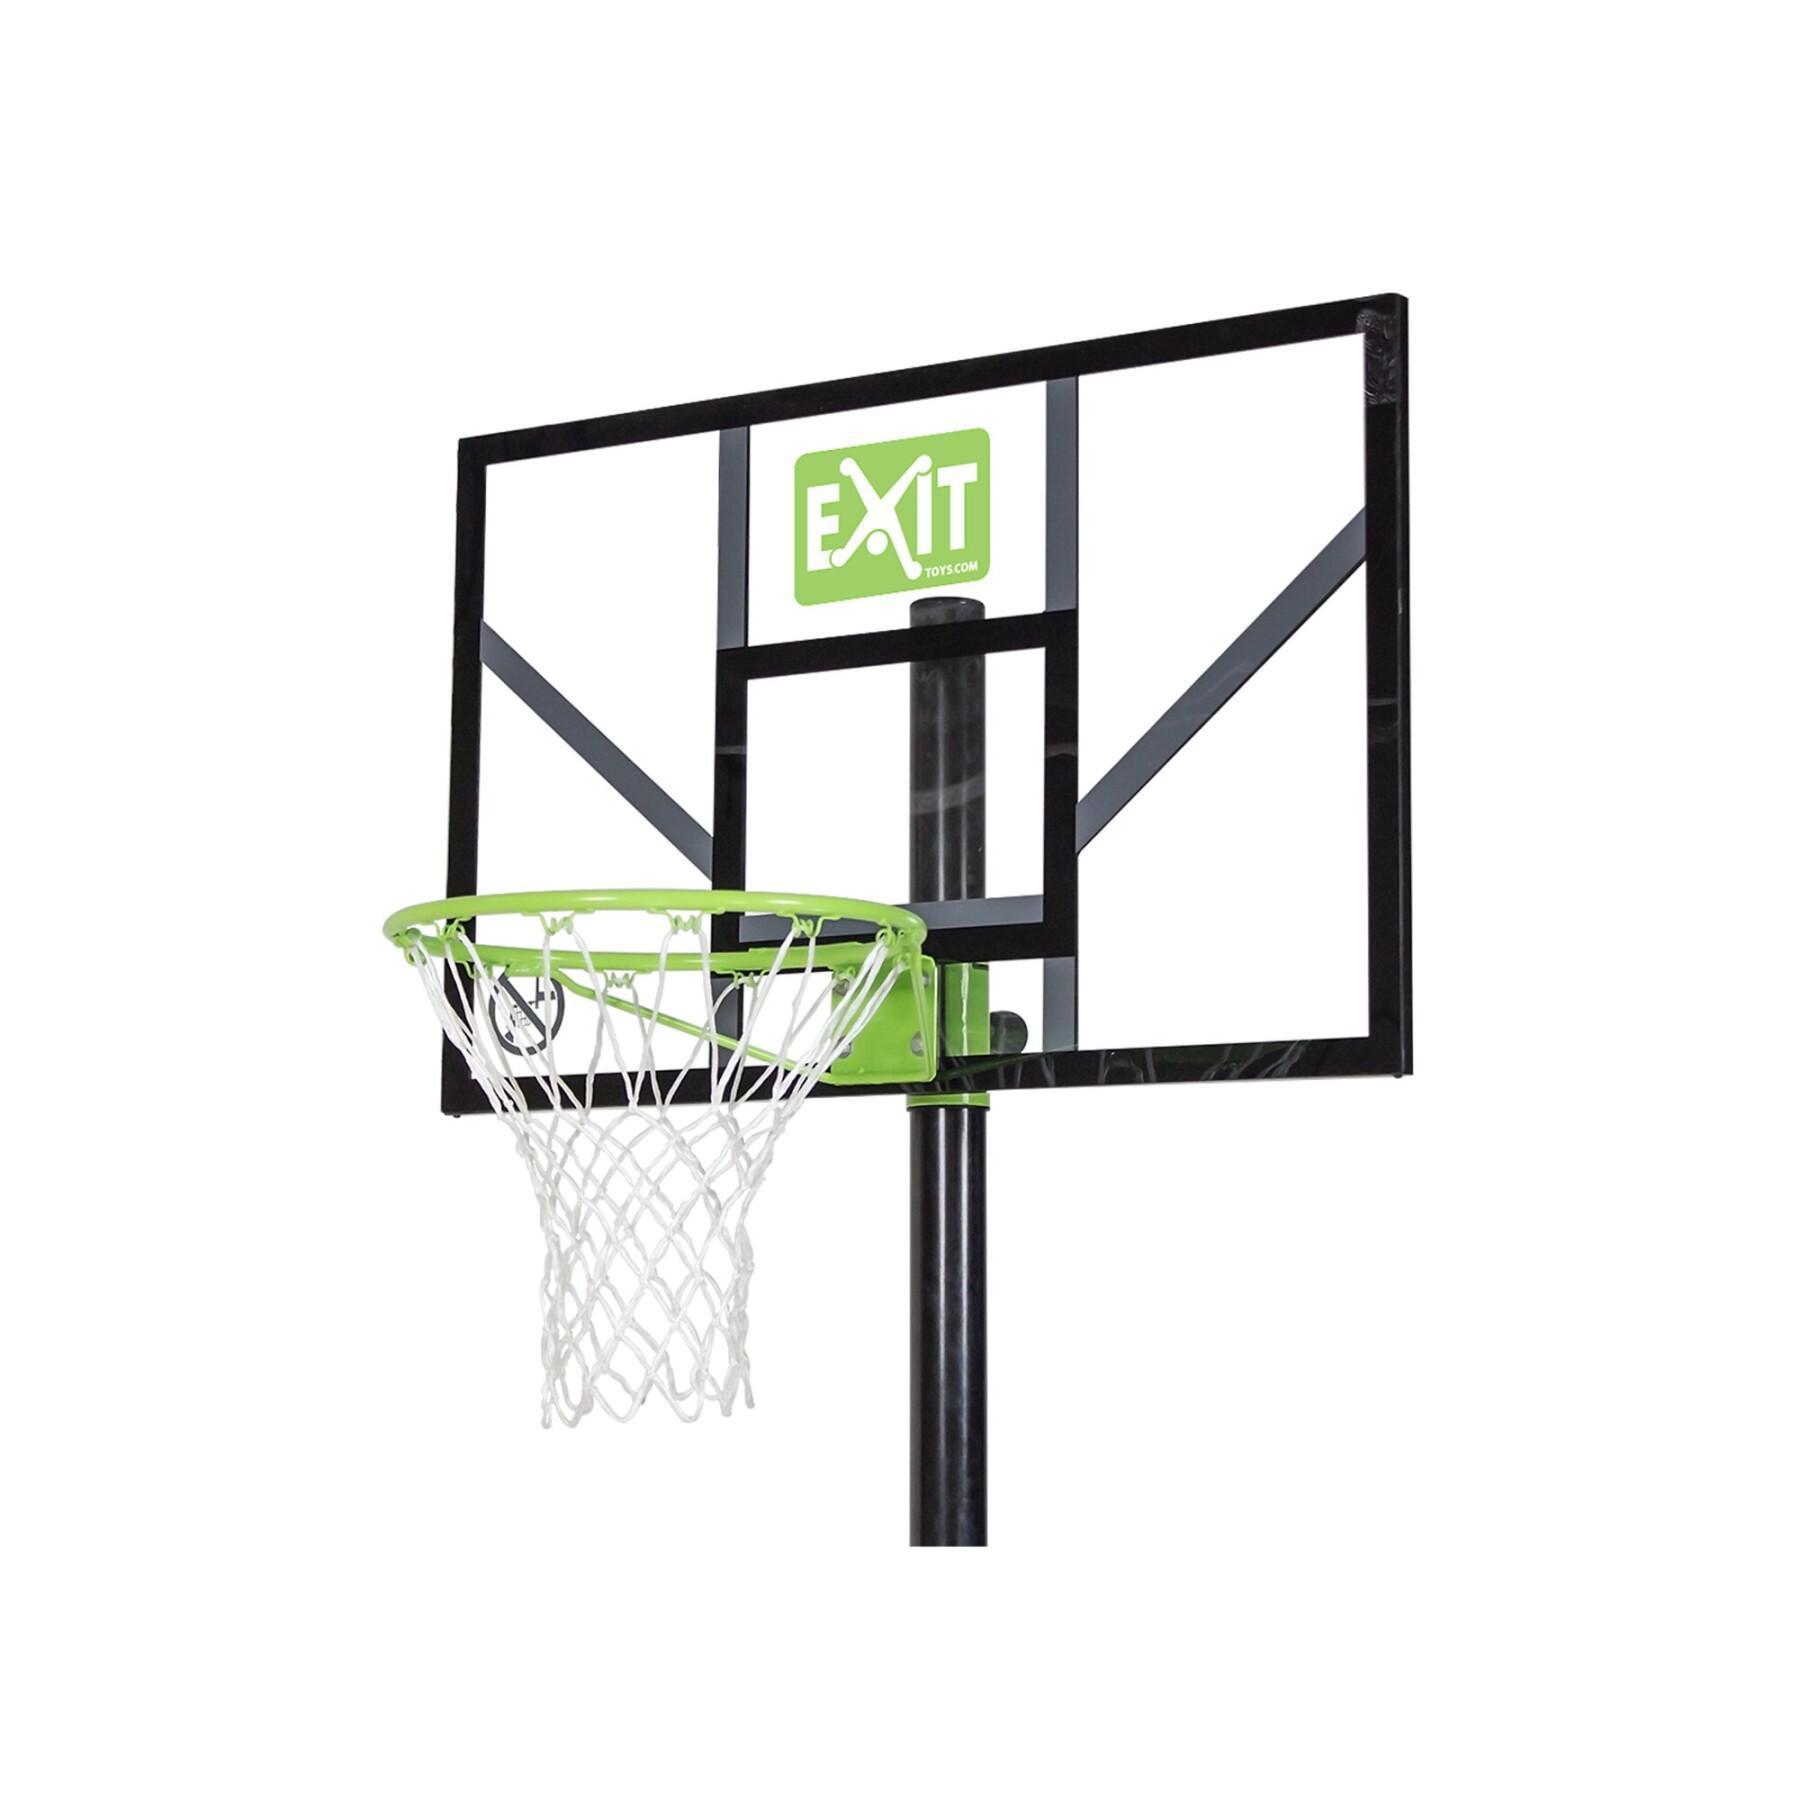 Canasta de baloncesto móvil Exit Toys Comet